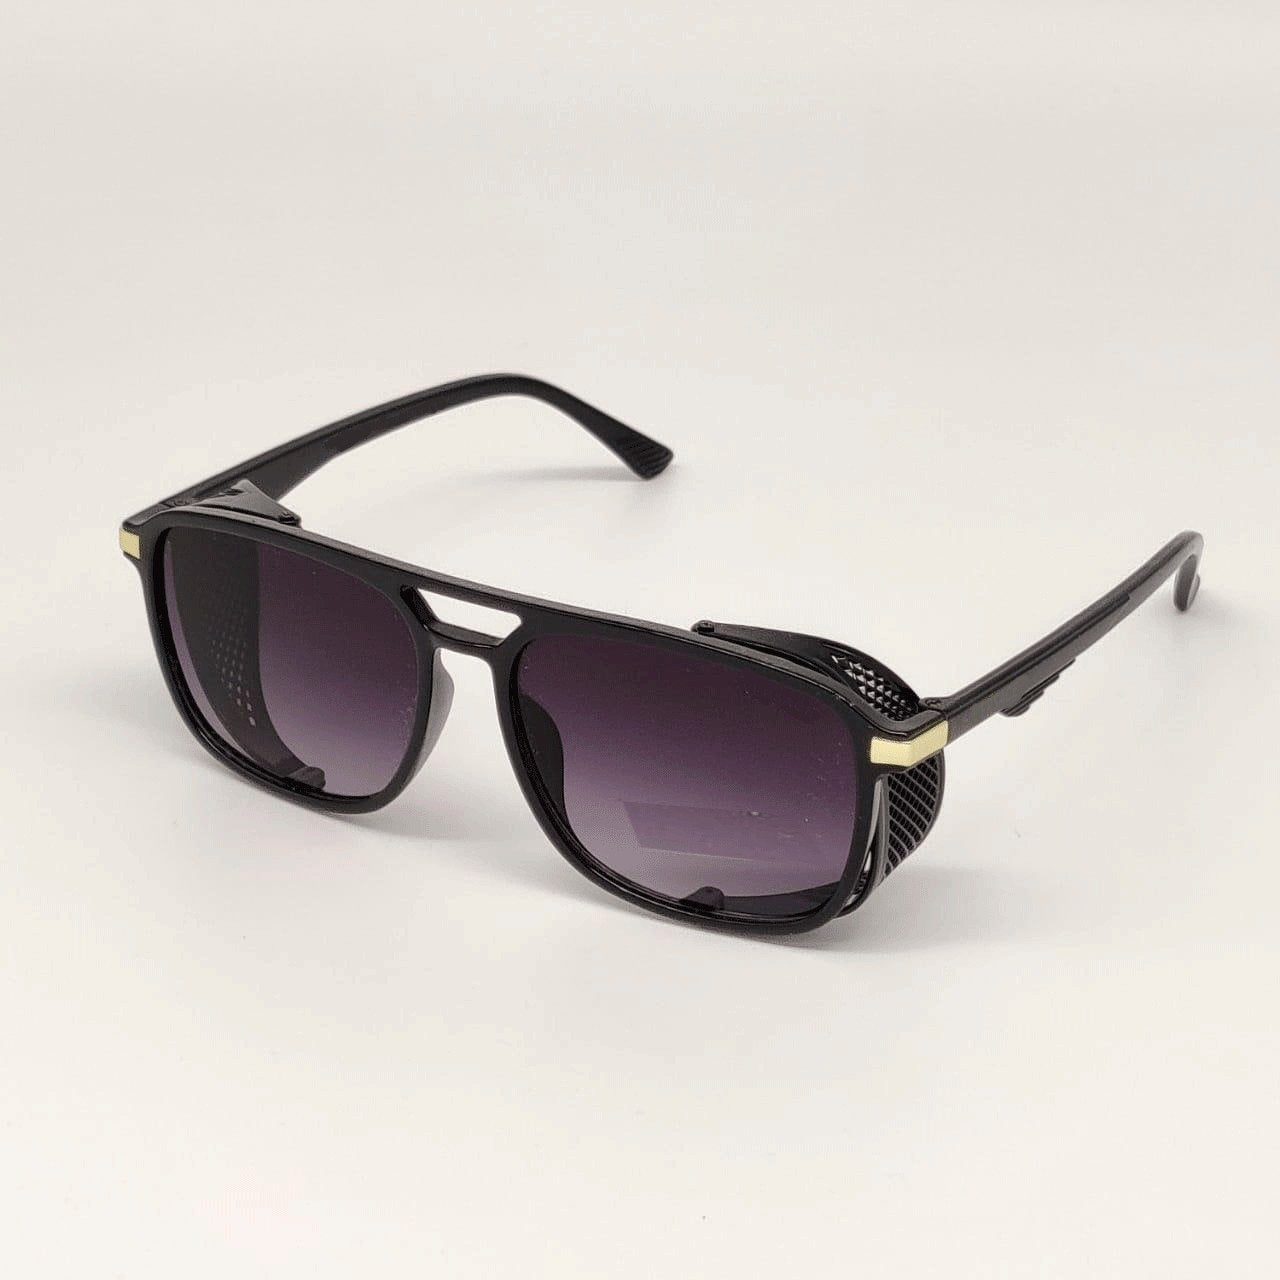 Stylish Square Cap Sunglasses For Men And Women-SunglassesCarts